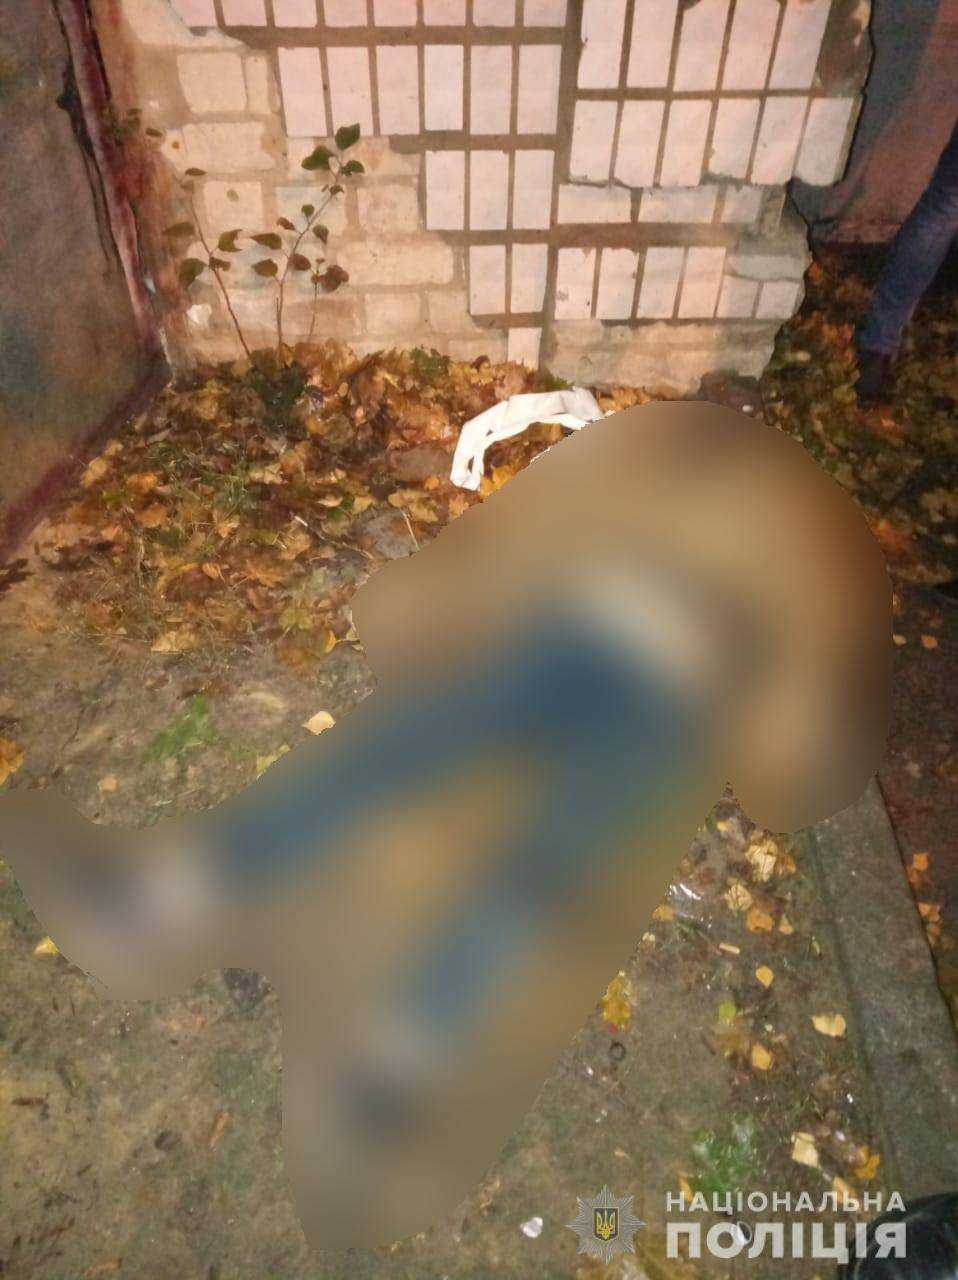 В Харькове возле мусорных баков нашли мертвую женщину